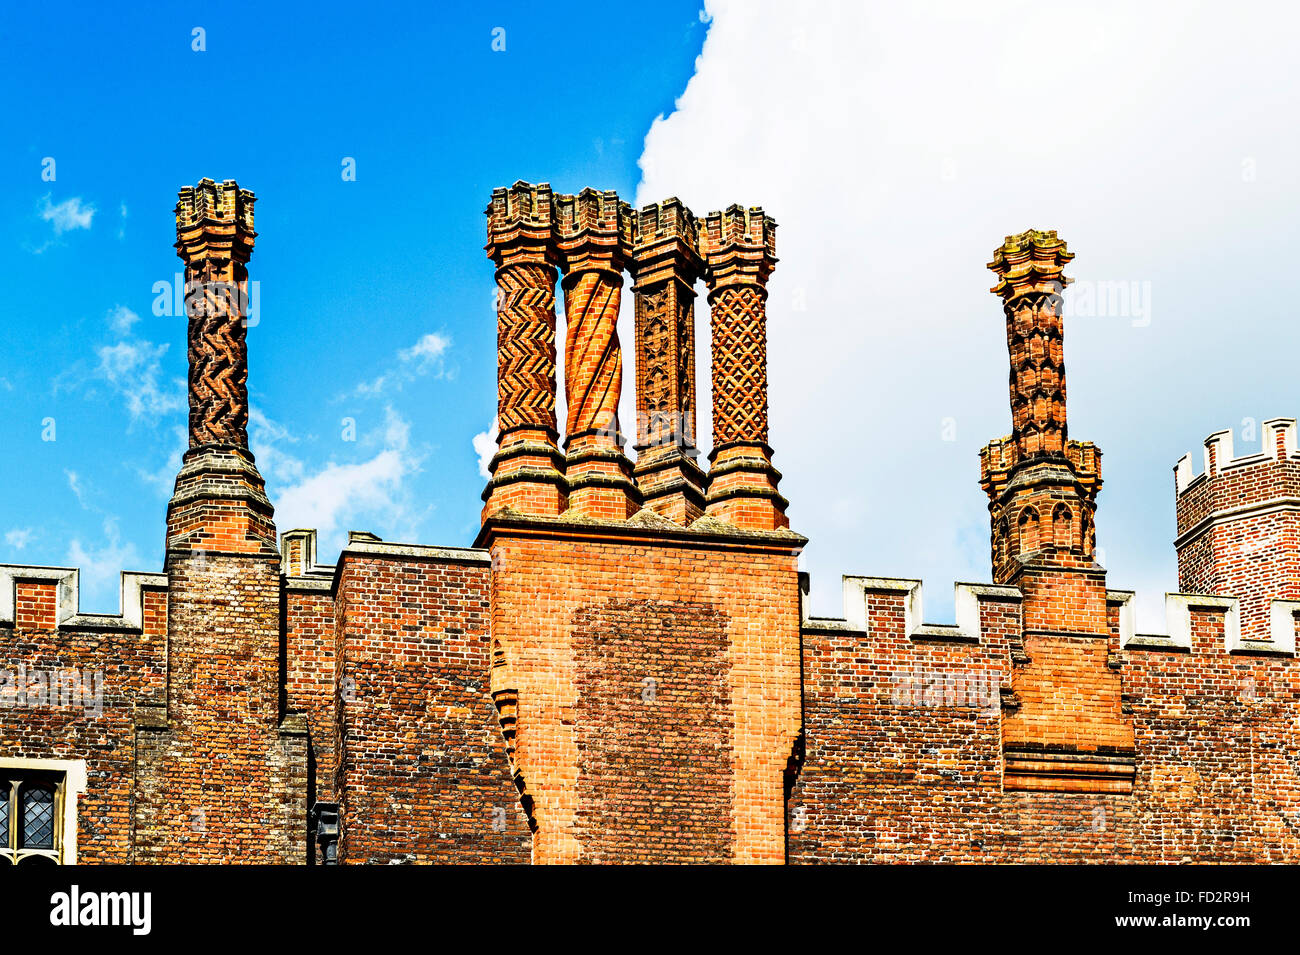 Les cheminées de style Tudor de Hampton Court Palace, Surrey ; Schornsteine en Tudorstil im Schloss Hampton Court Banque D'Images